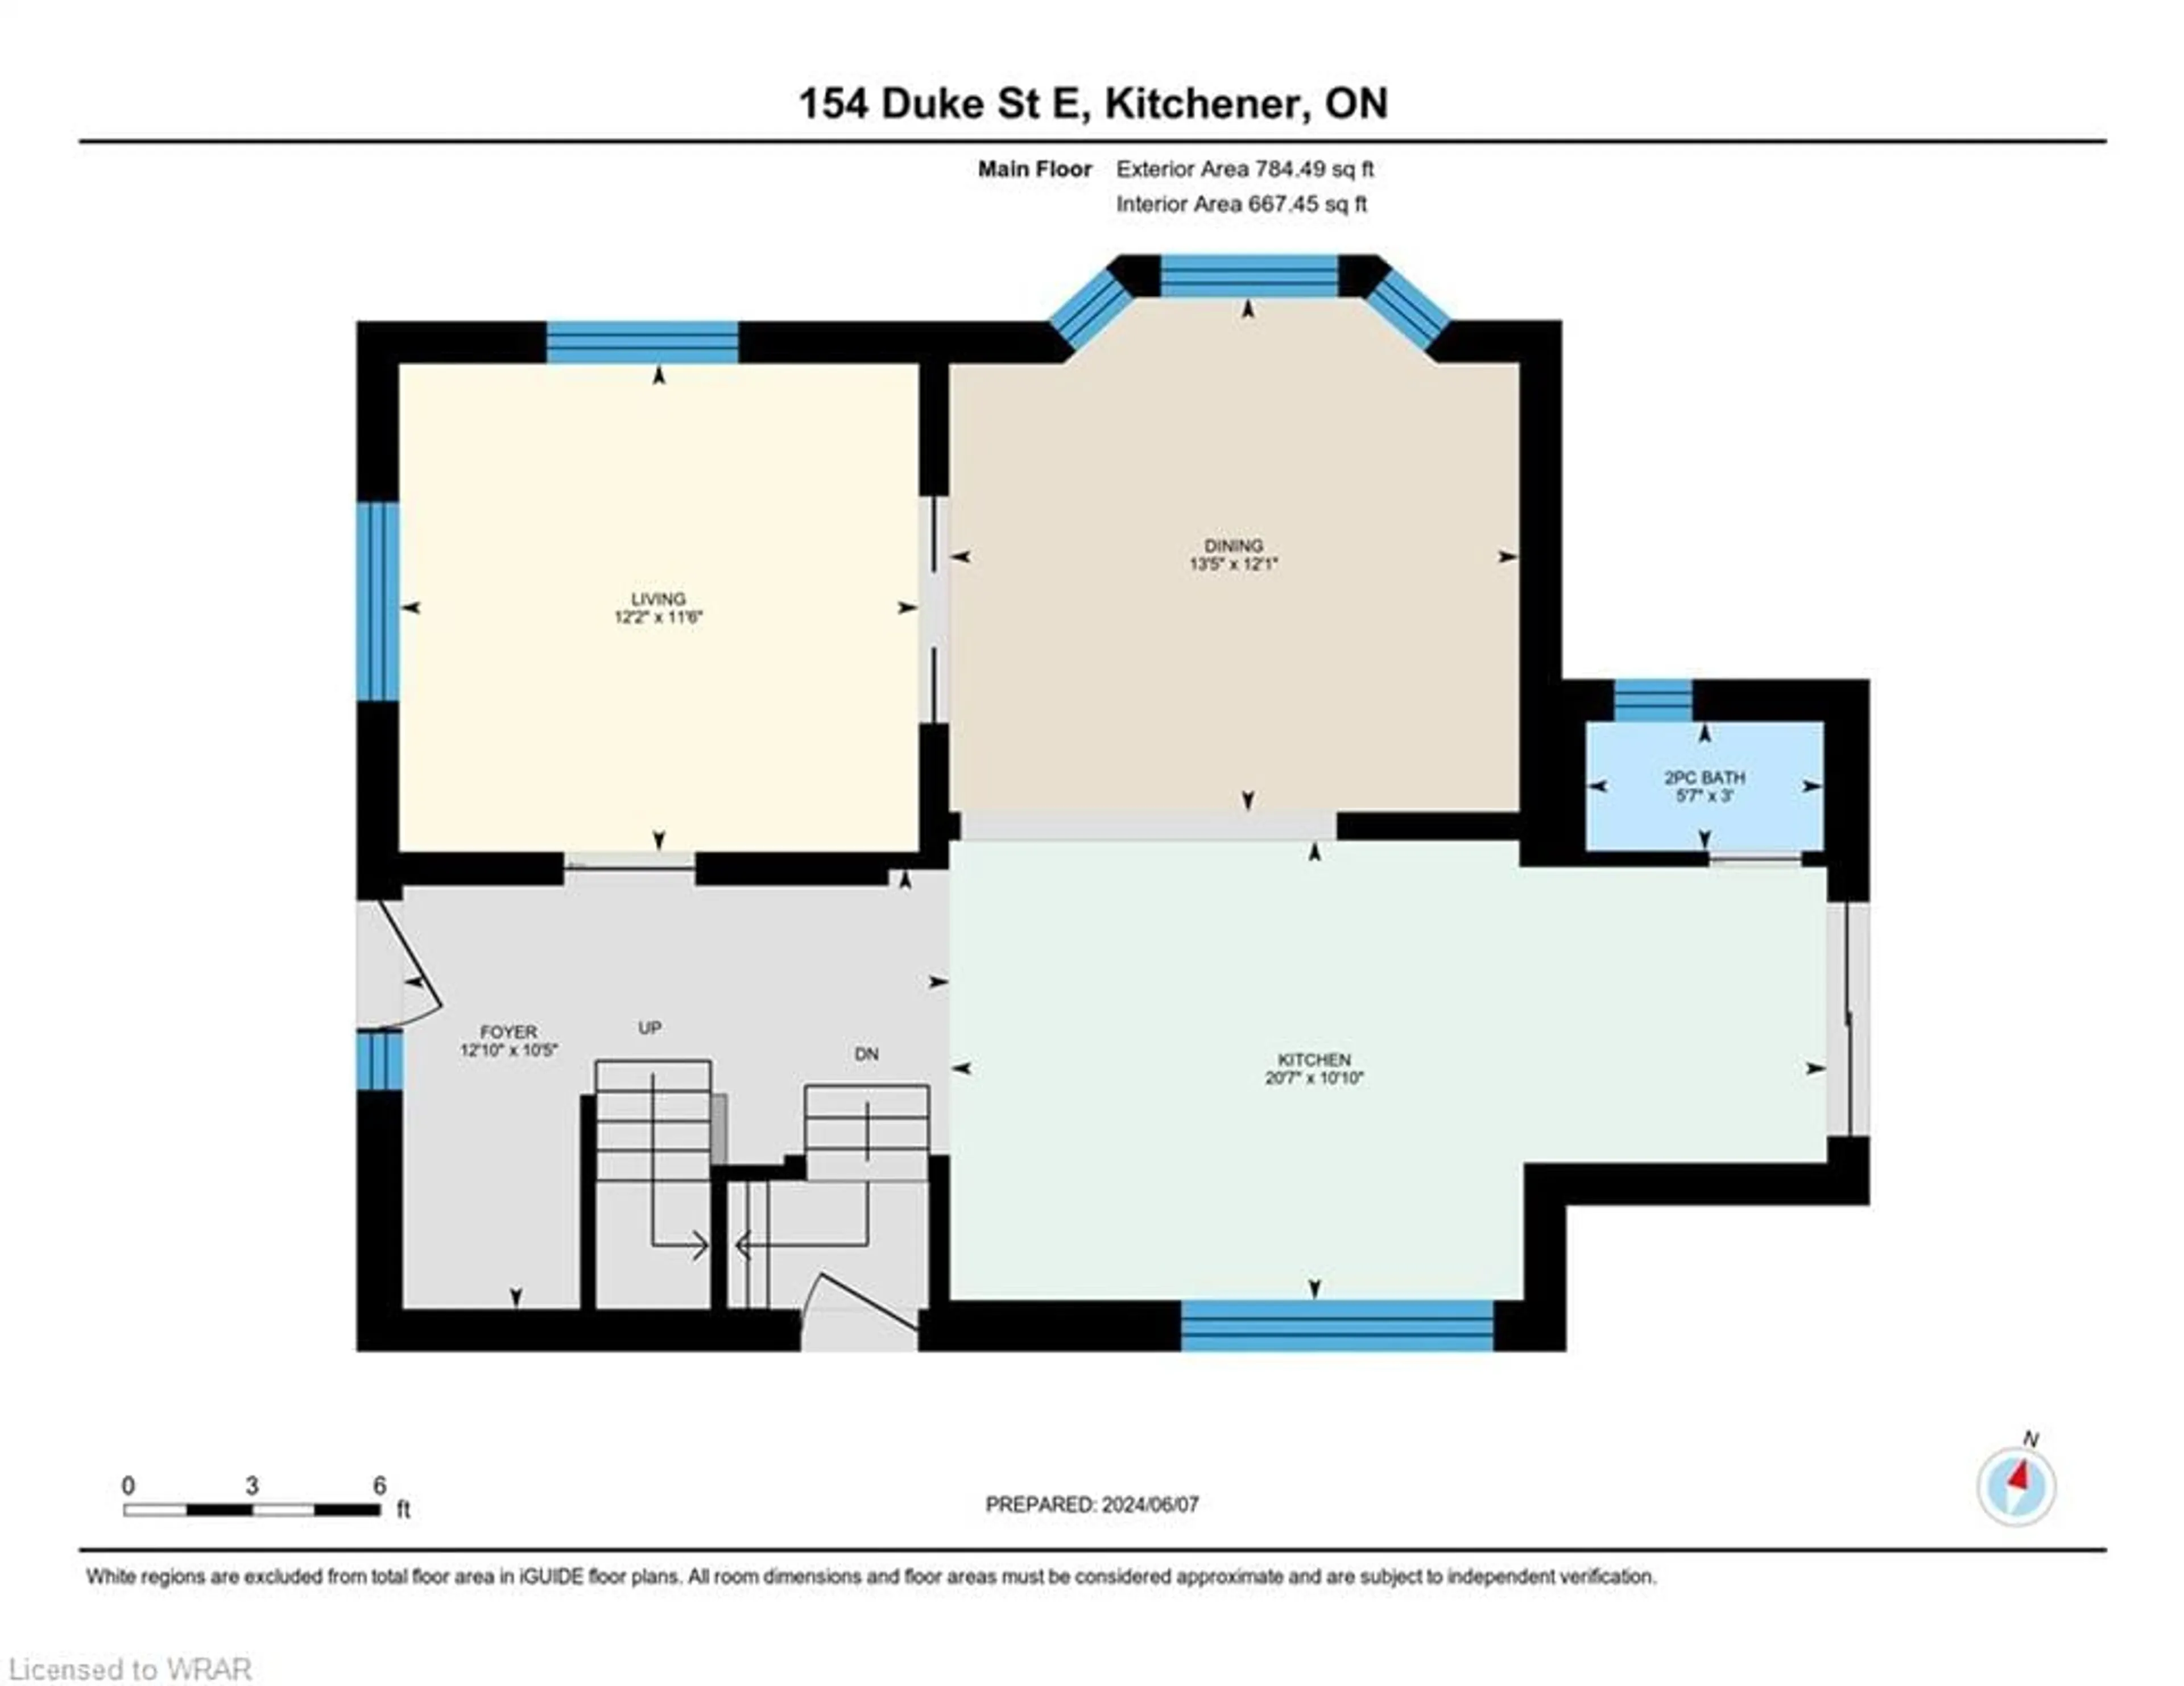 Floor plan for 154 Duke St, Kitchener Ontario N2H 1A7